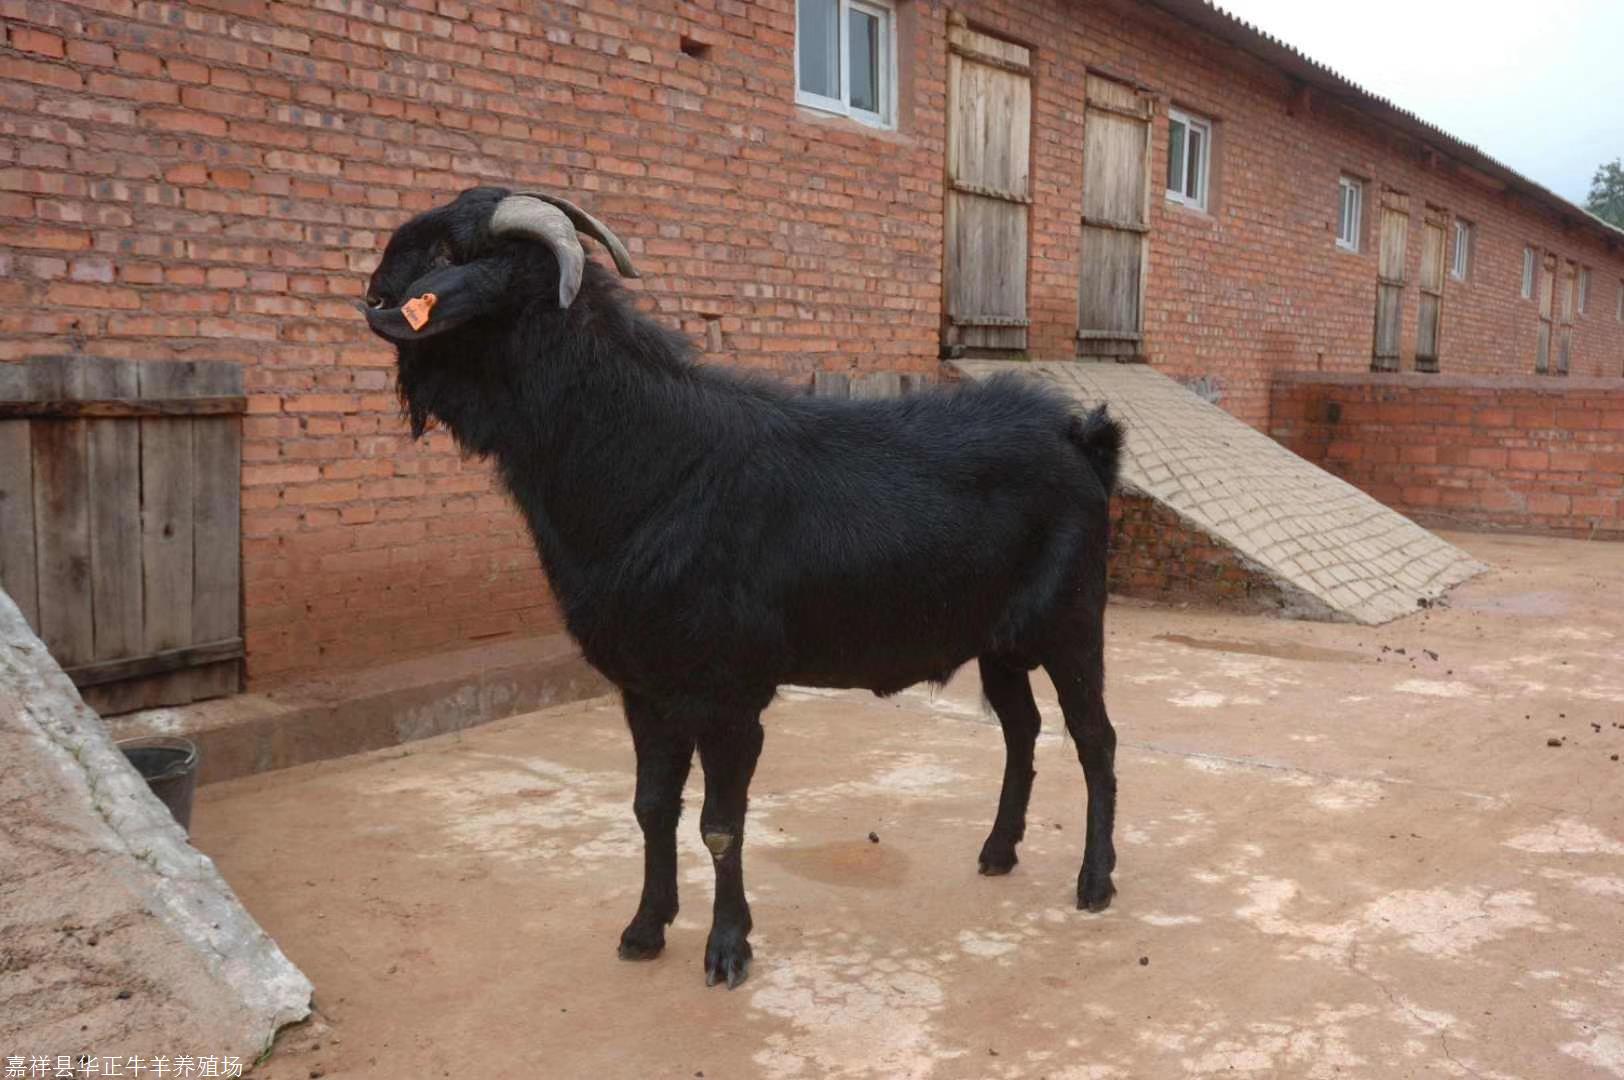 努比亚种公羊养殖场 努比亚黑山羊能长多少斤 羊羔 羊苗